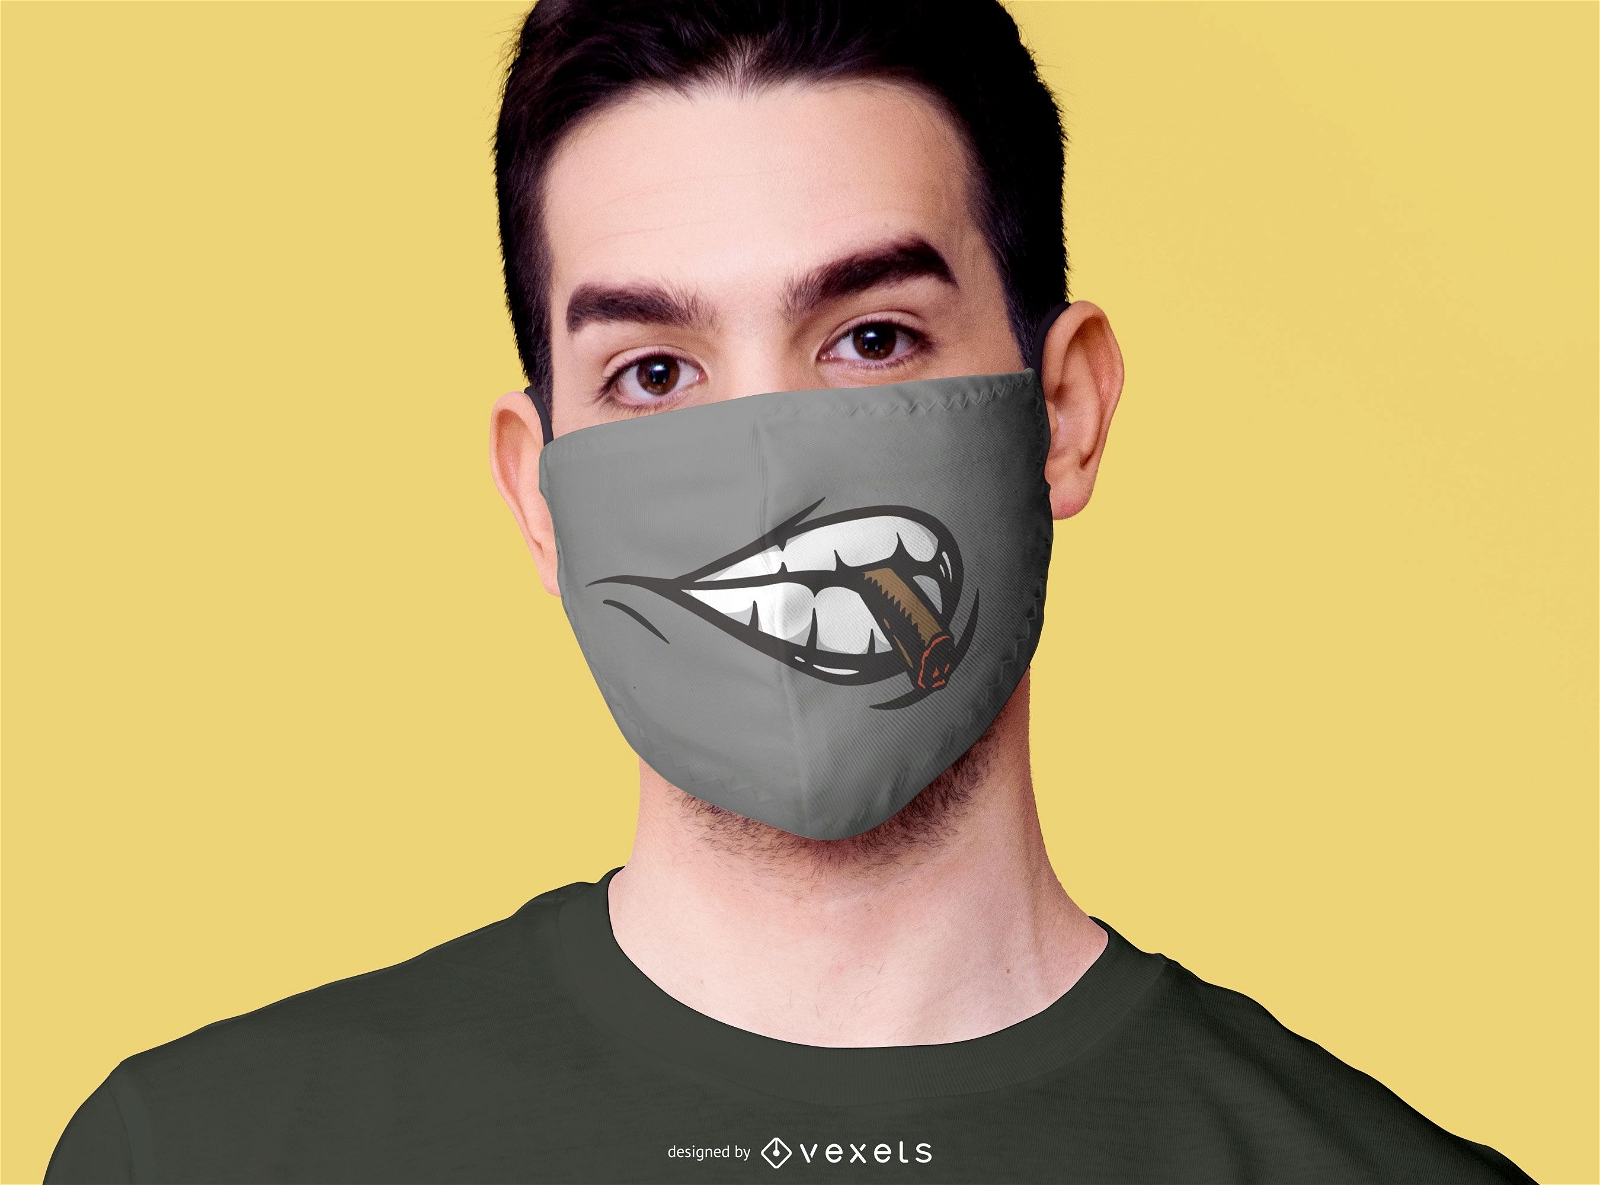 Design de máscara facial para fumantes